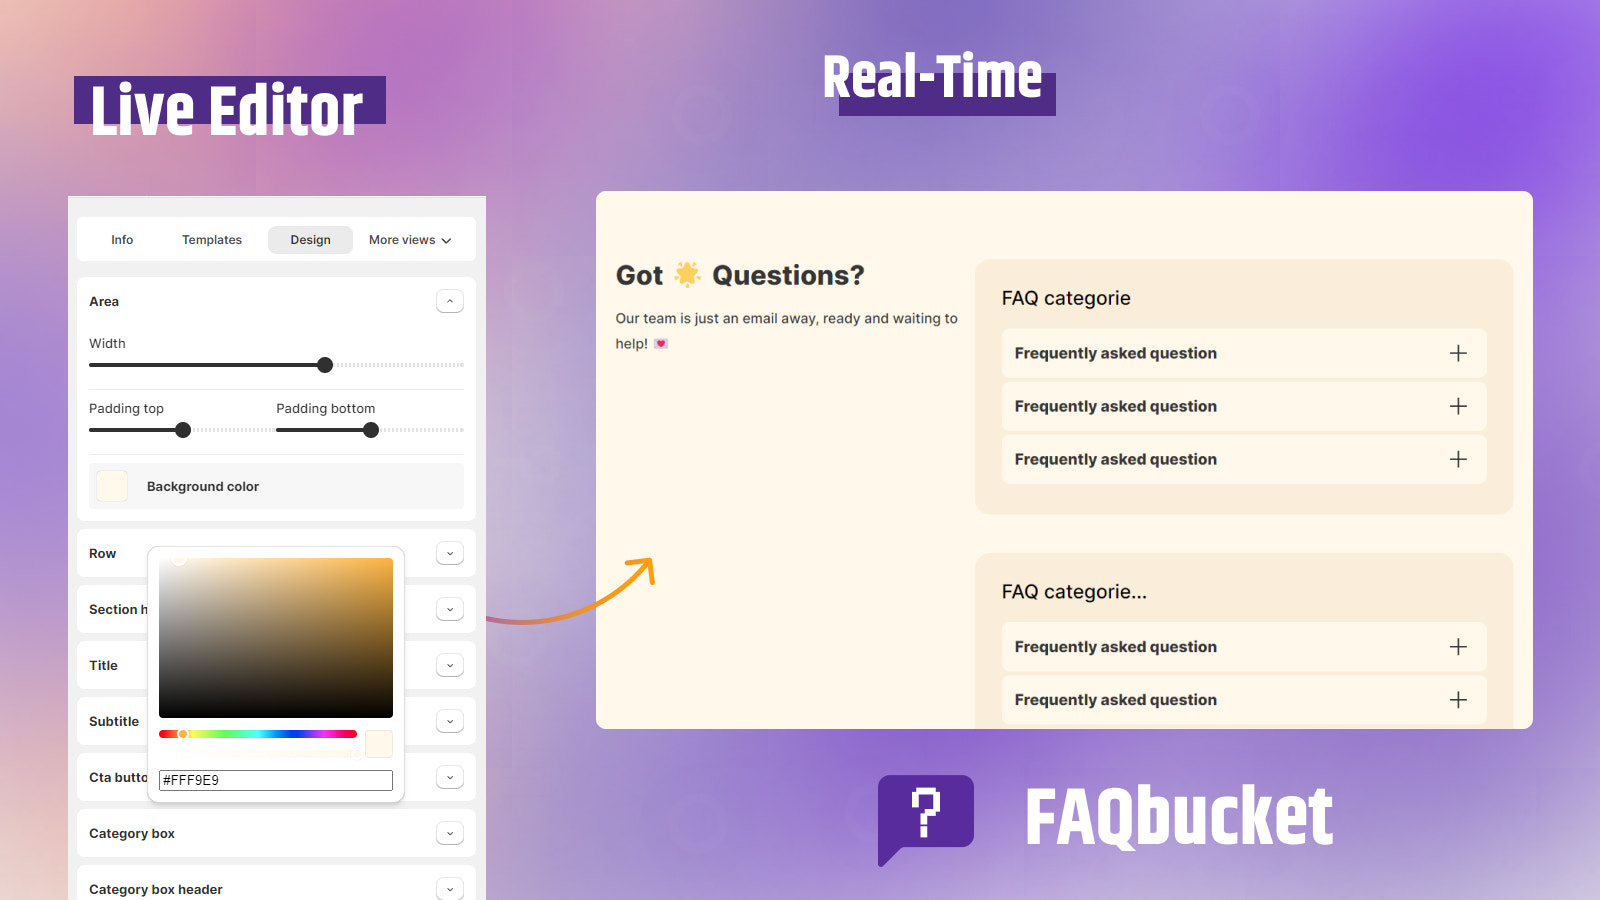 apps de faq shopify para páginas de produtos, blogs, coleções, chats